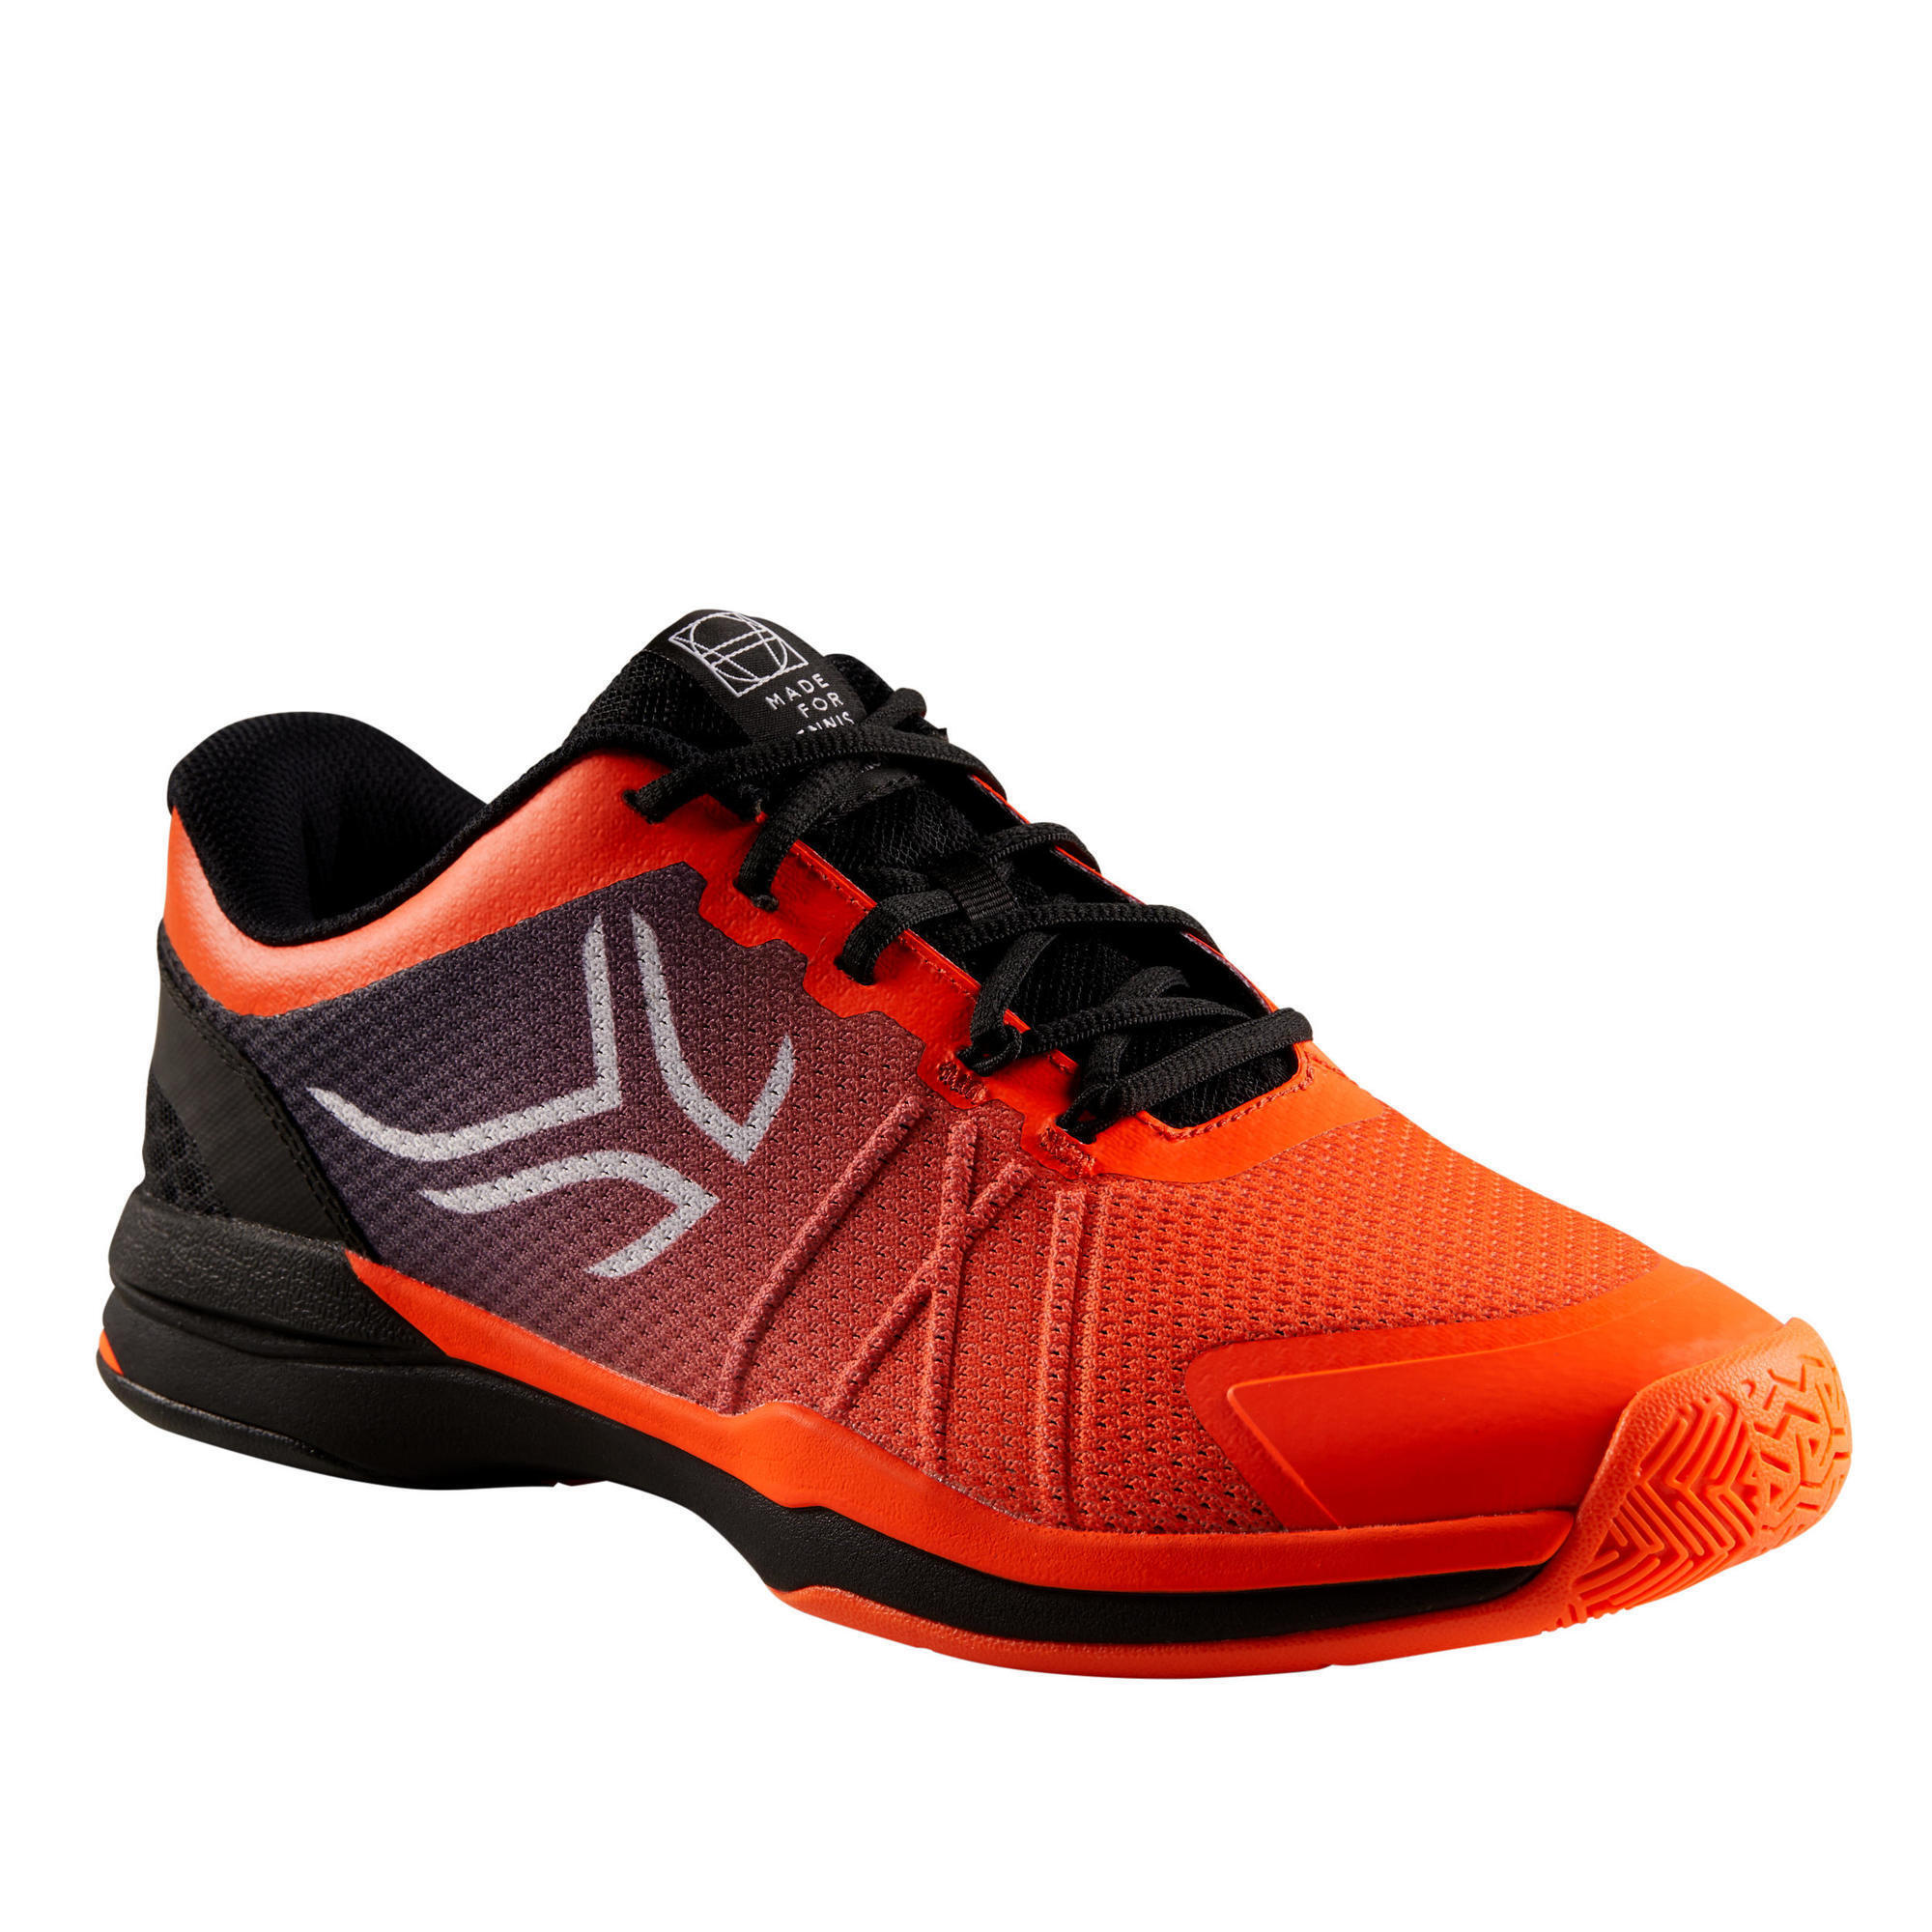 ARTENGO Men's Multi-Court Tennis Shoes TS590 - Orange/Black